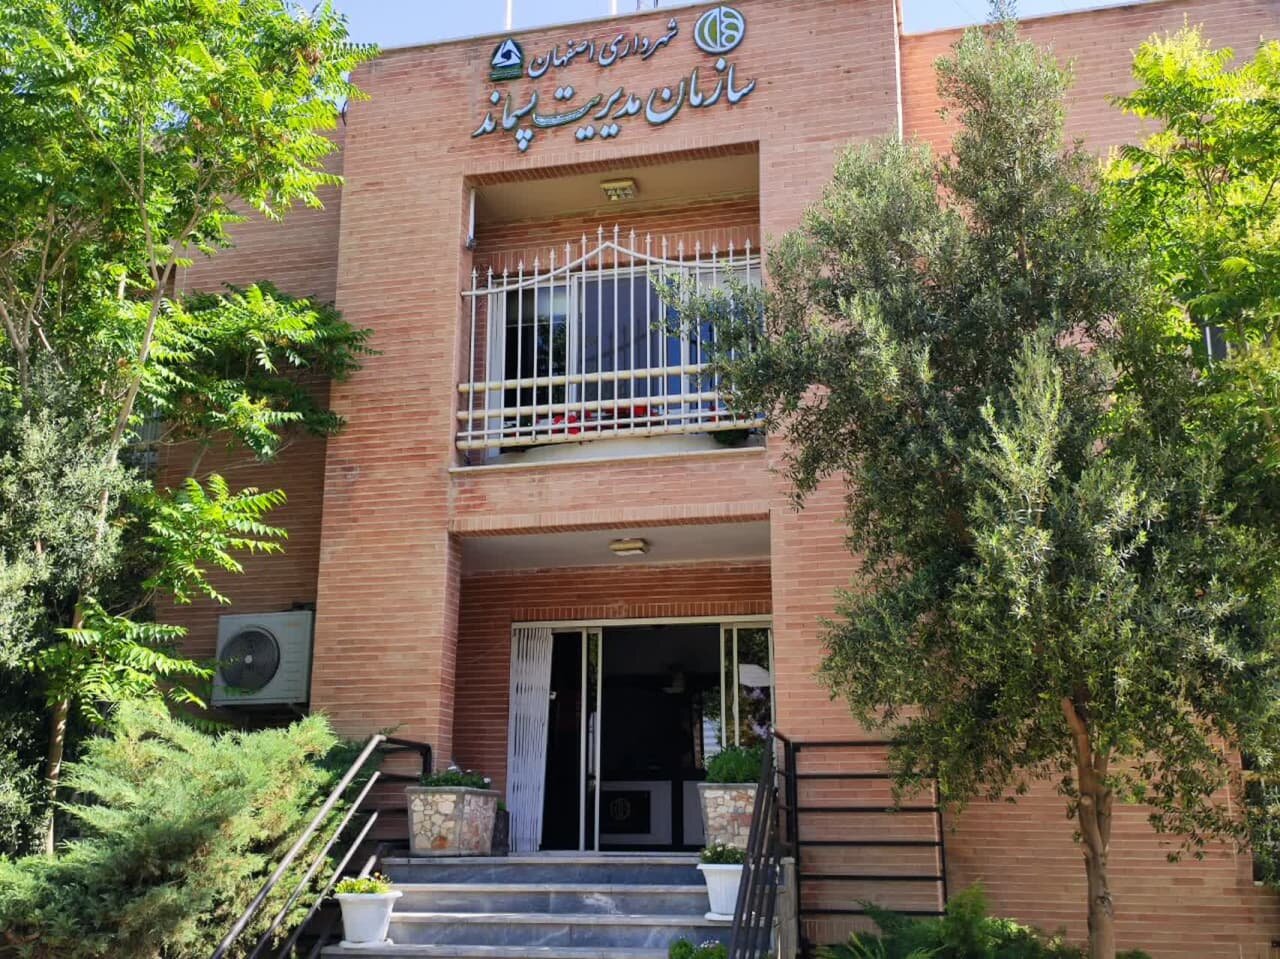 بررسی ۴۸ پیشنهاد در نظام پیشنهادات سازمان مدیریت پسماند شهرداری اصفهان